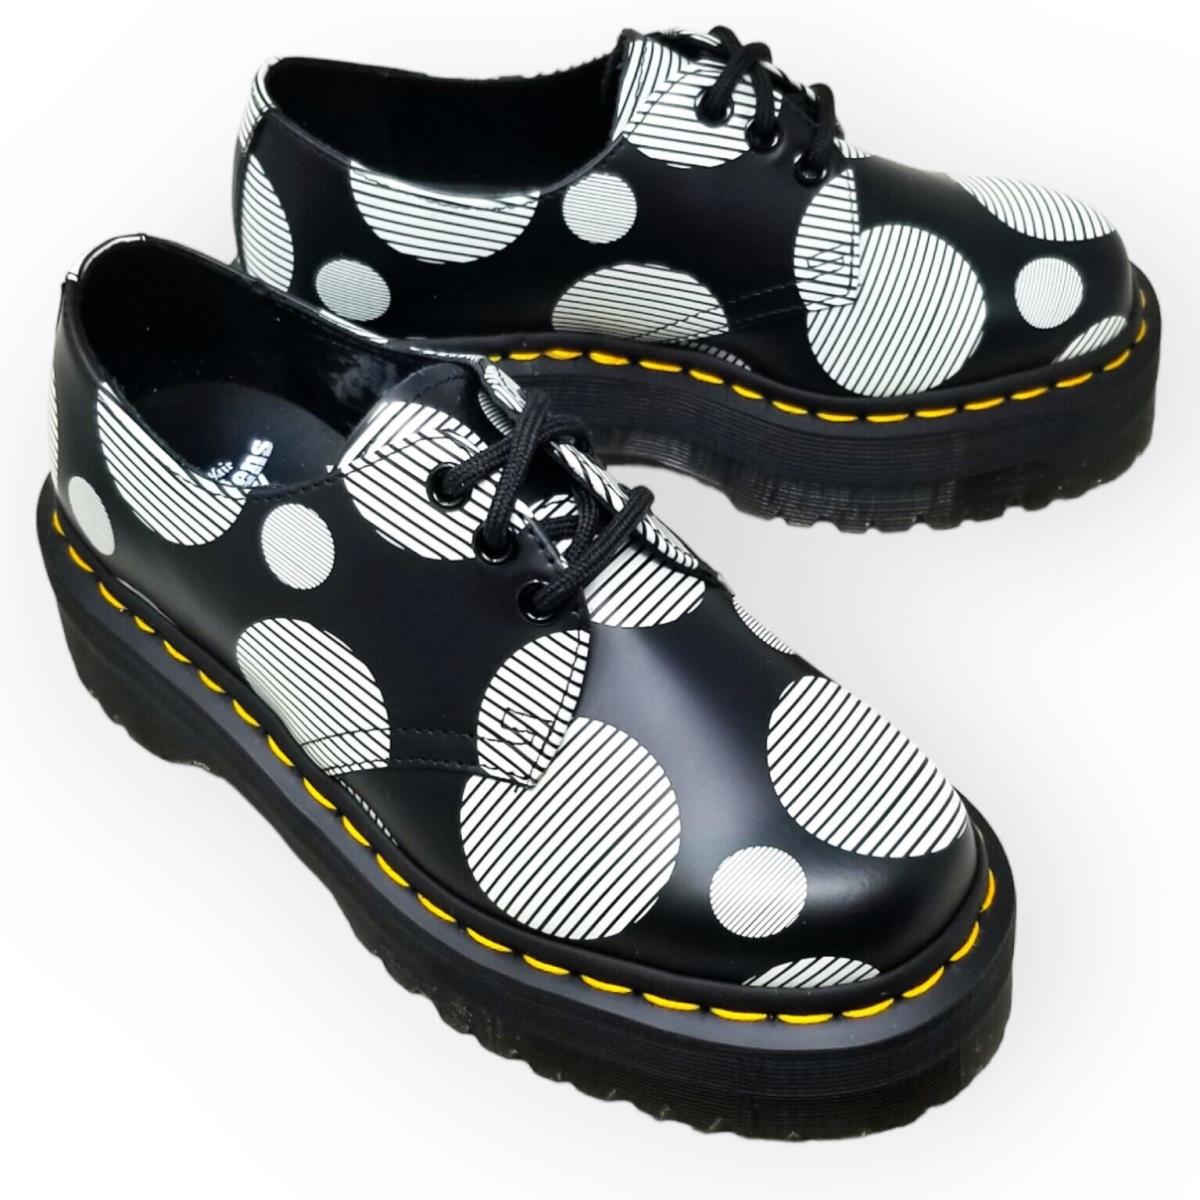 Dr. Martens 1461 Quad Polka Dot Smooth Leather Platform Shoes Black+white